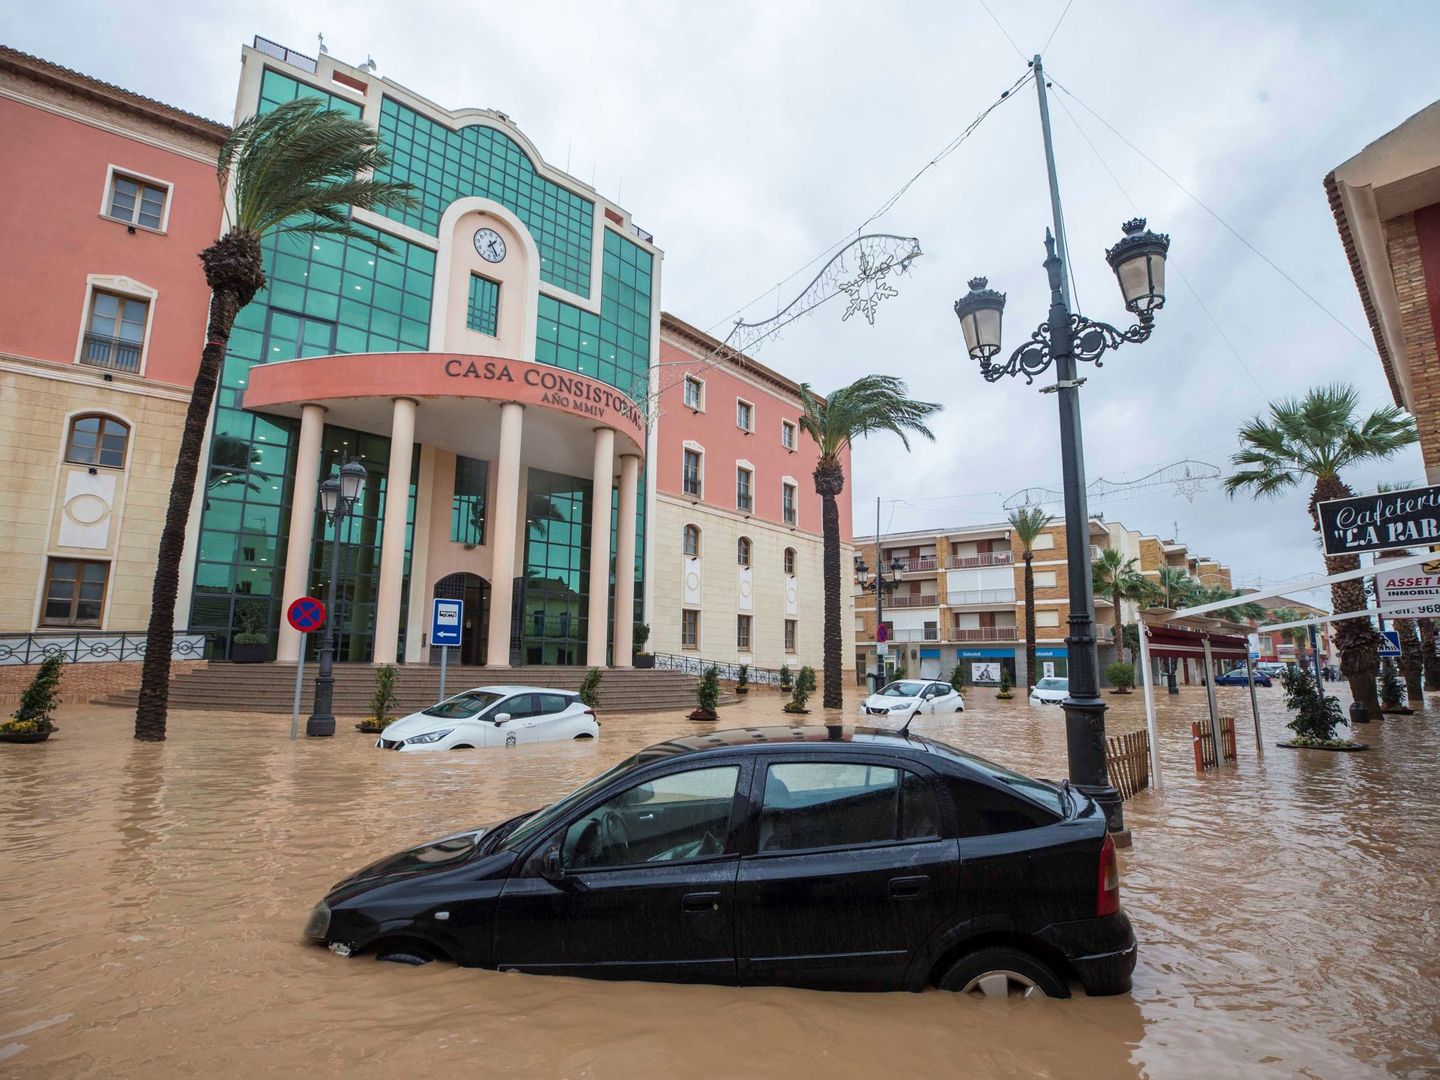 Varios coches atrapados por en el agua a causa de las fuertes lluvias caídas a finales de 2019 en Campo de Cartagena, Murcia (EFE)